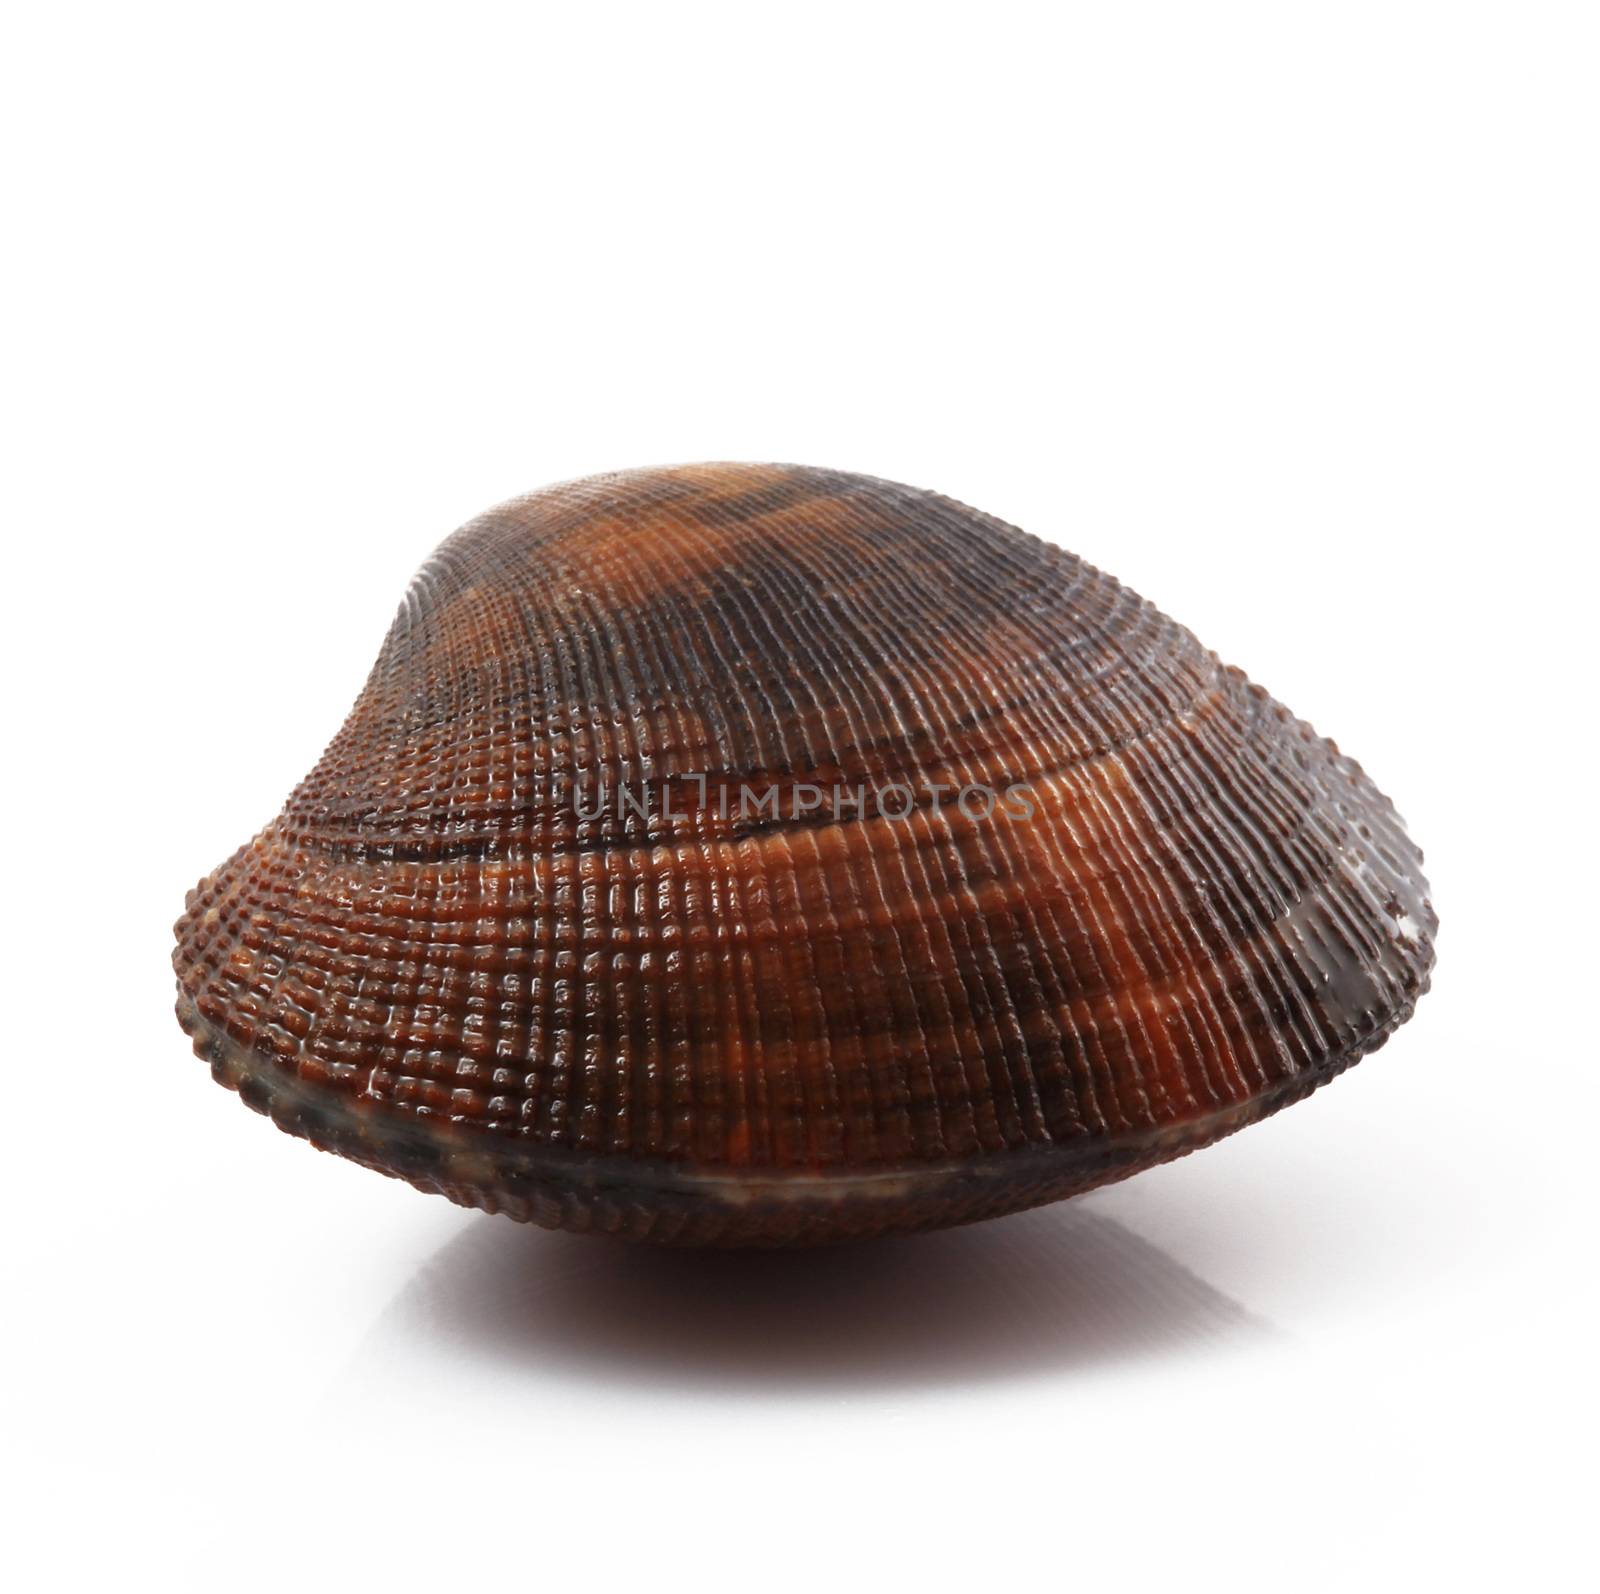 isolated fresh clam on white background